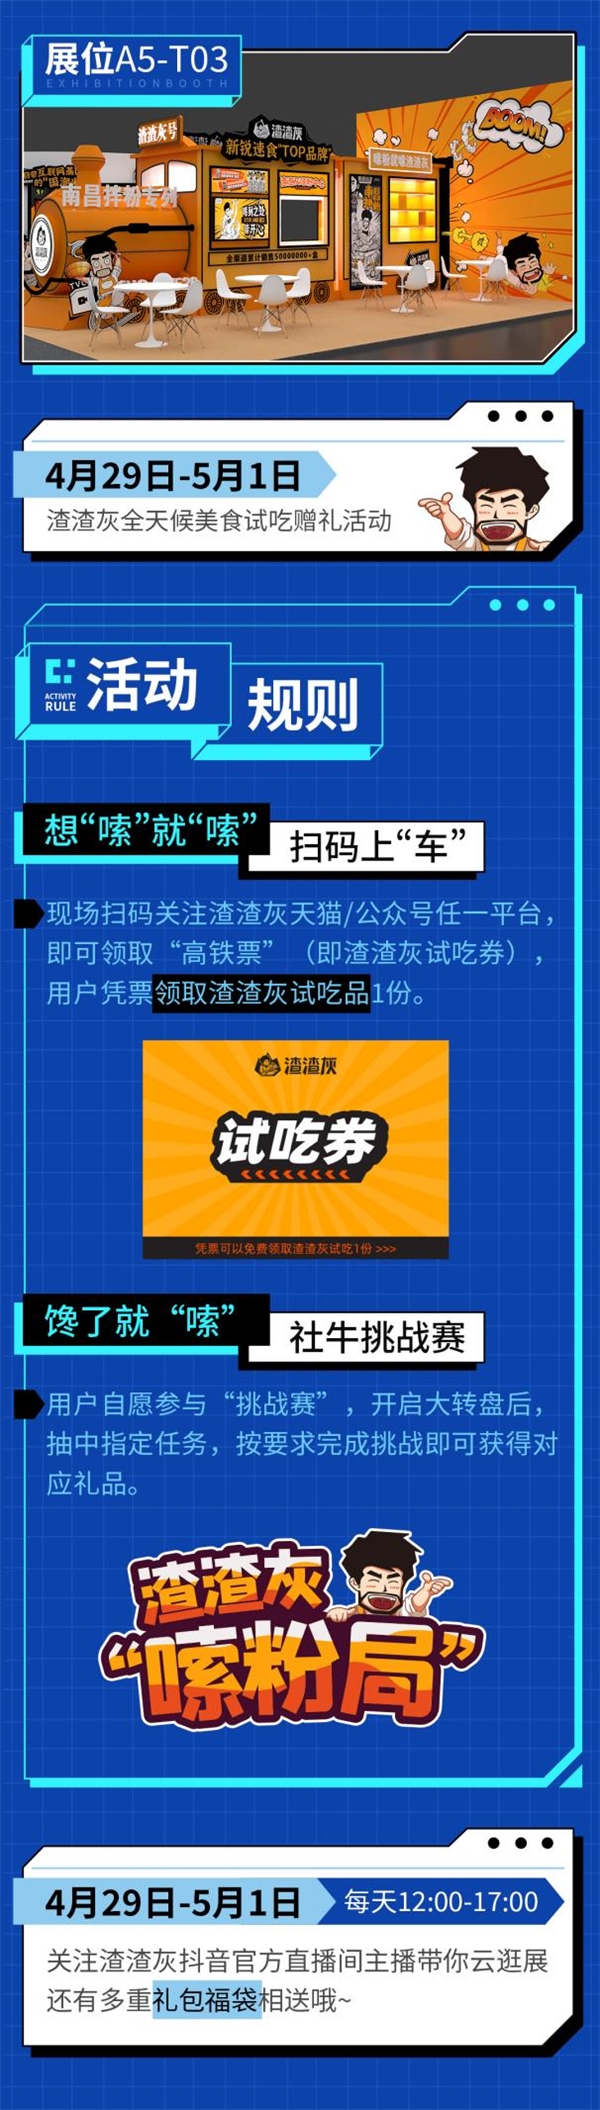 展位面积第一！中旭未来参展2023中国国际数字互娱数字经济博览会